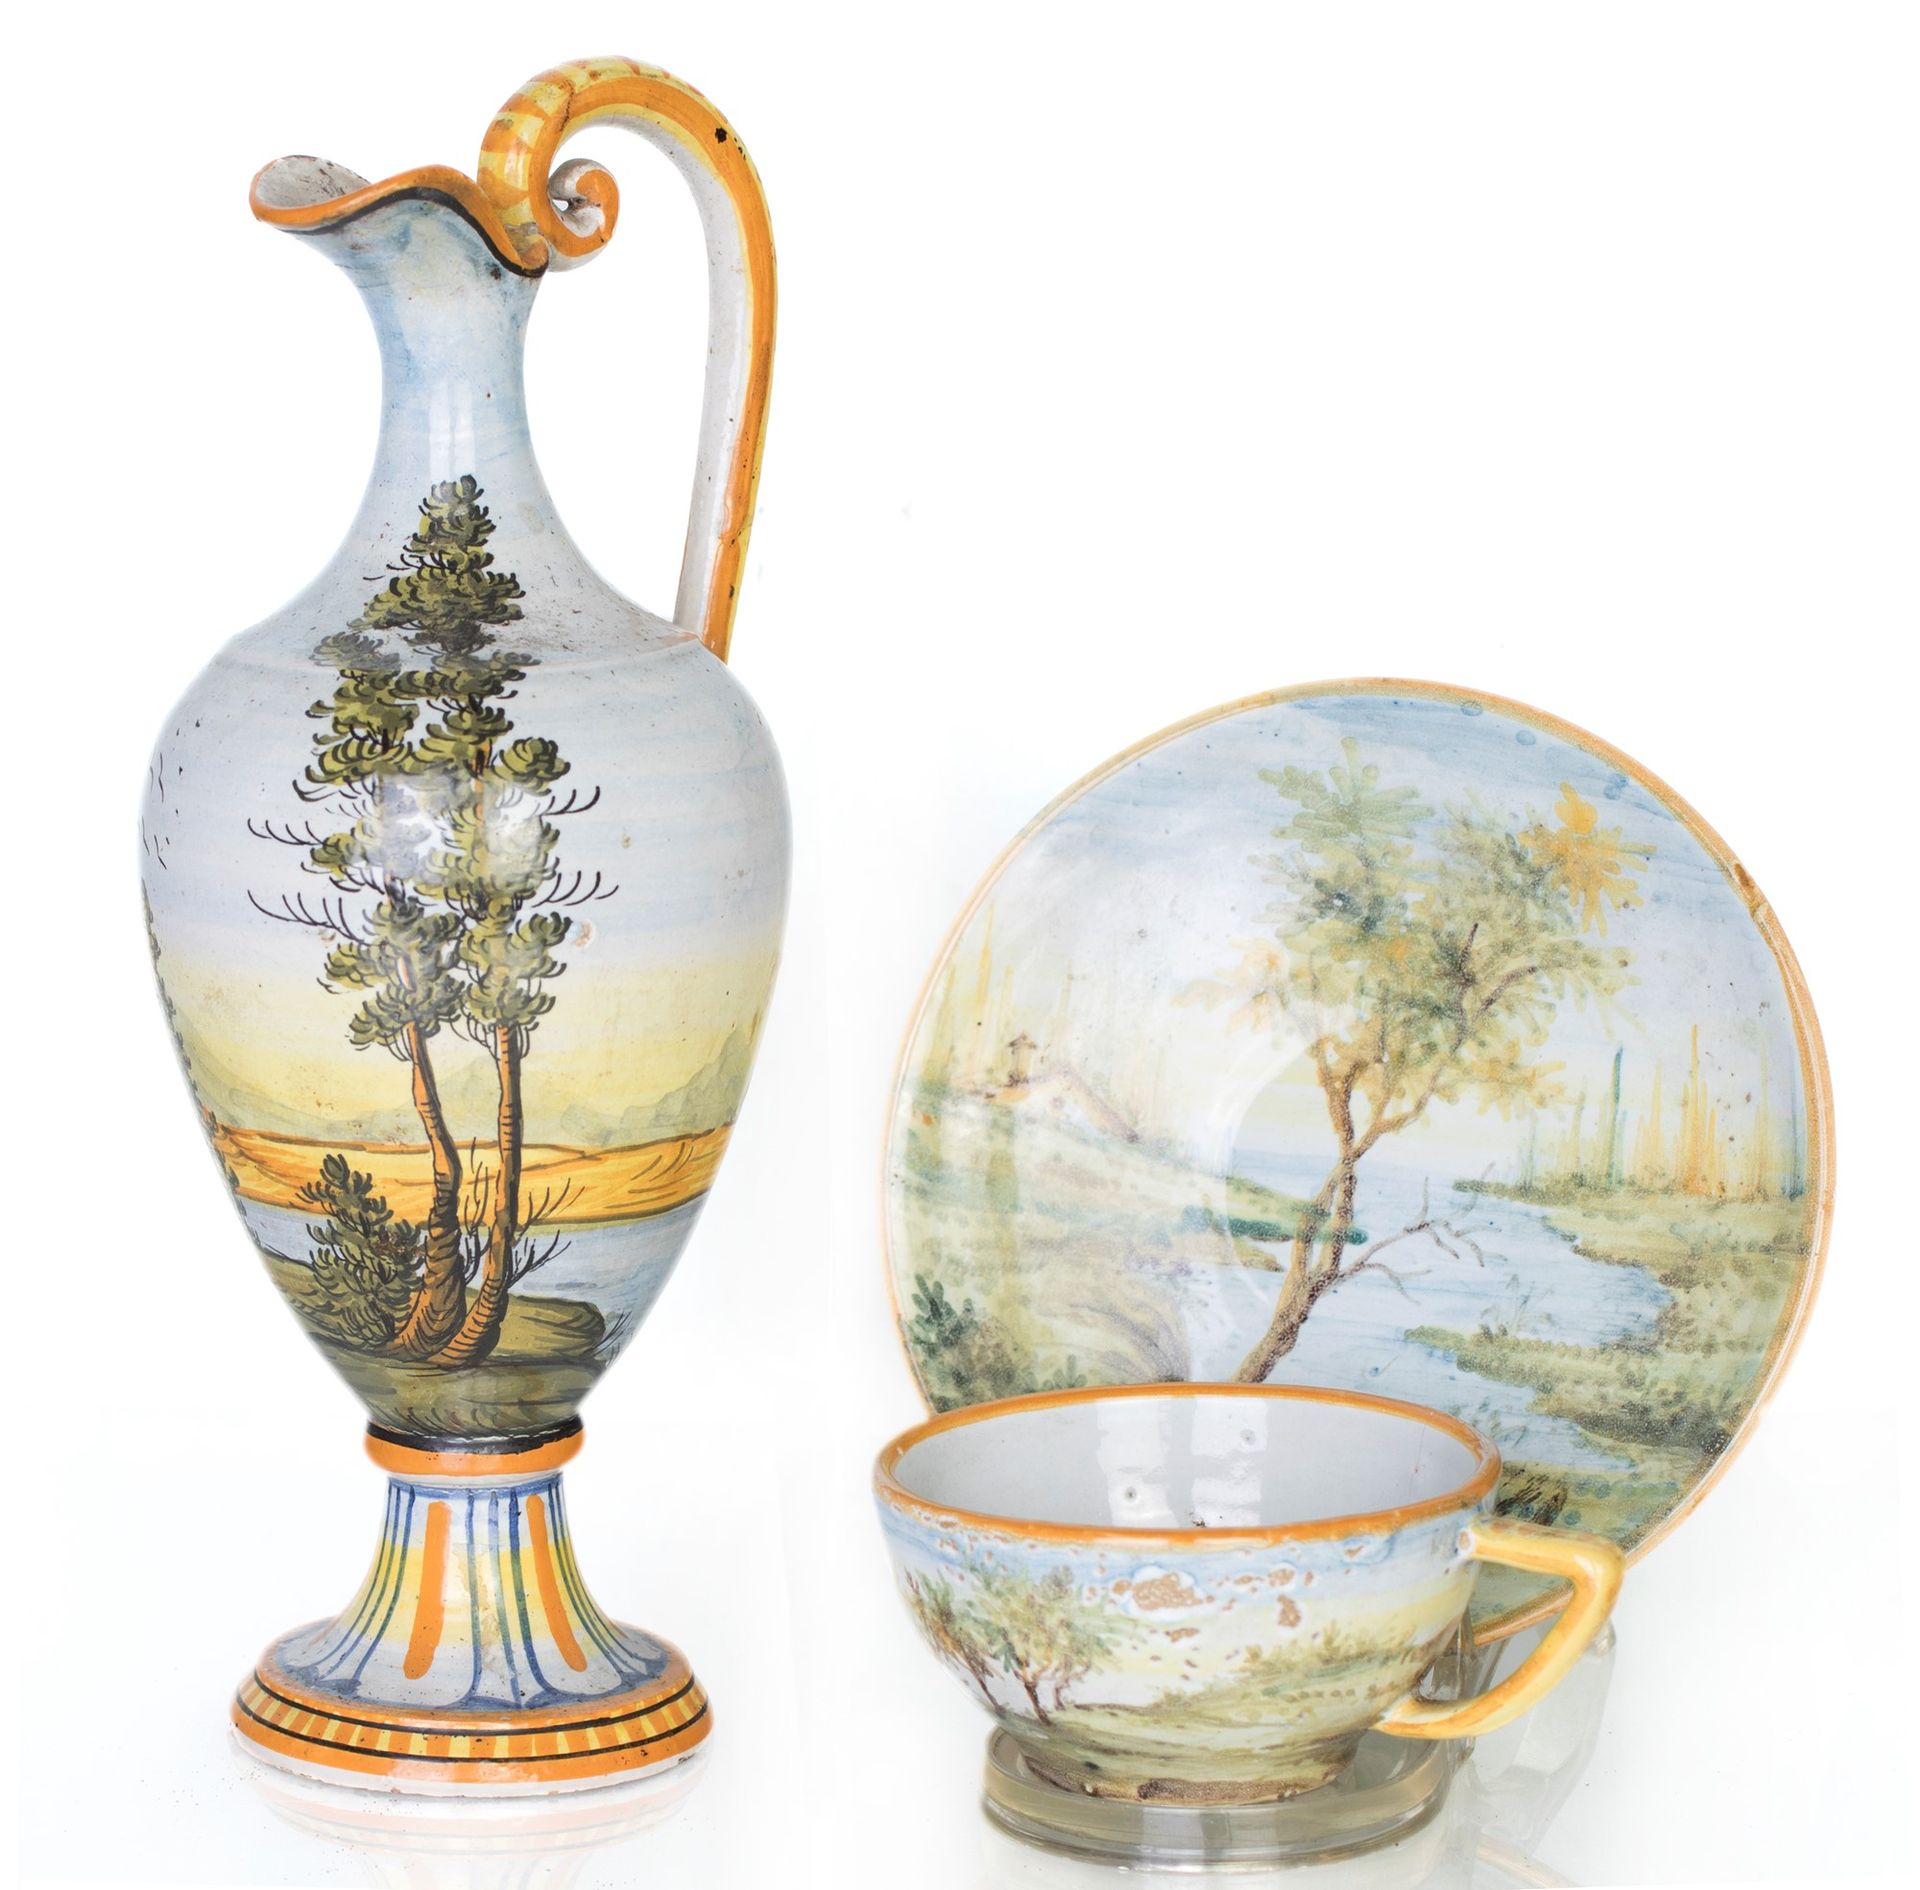 Castelli ceramic jug and cup with saucer verziert mit Landschaften in den charak&hellip;